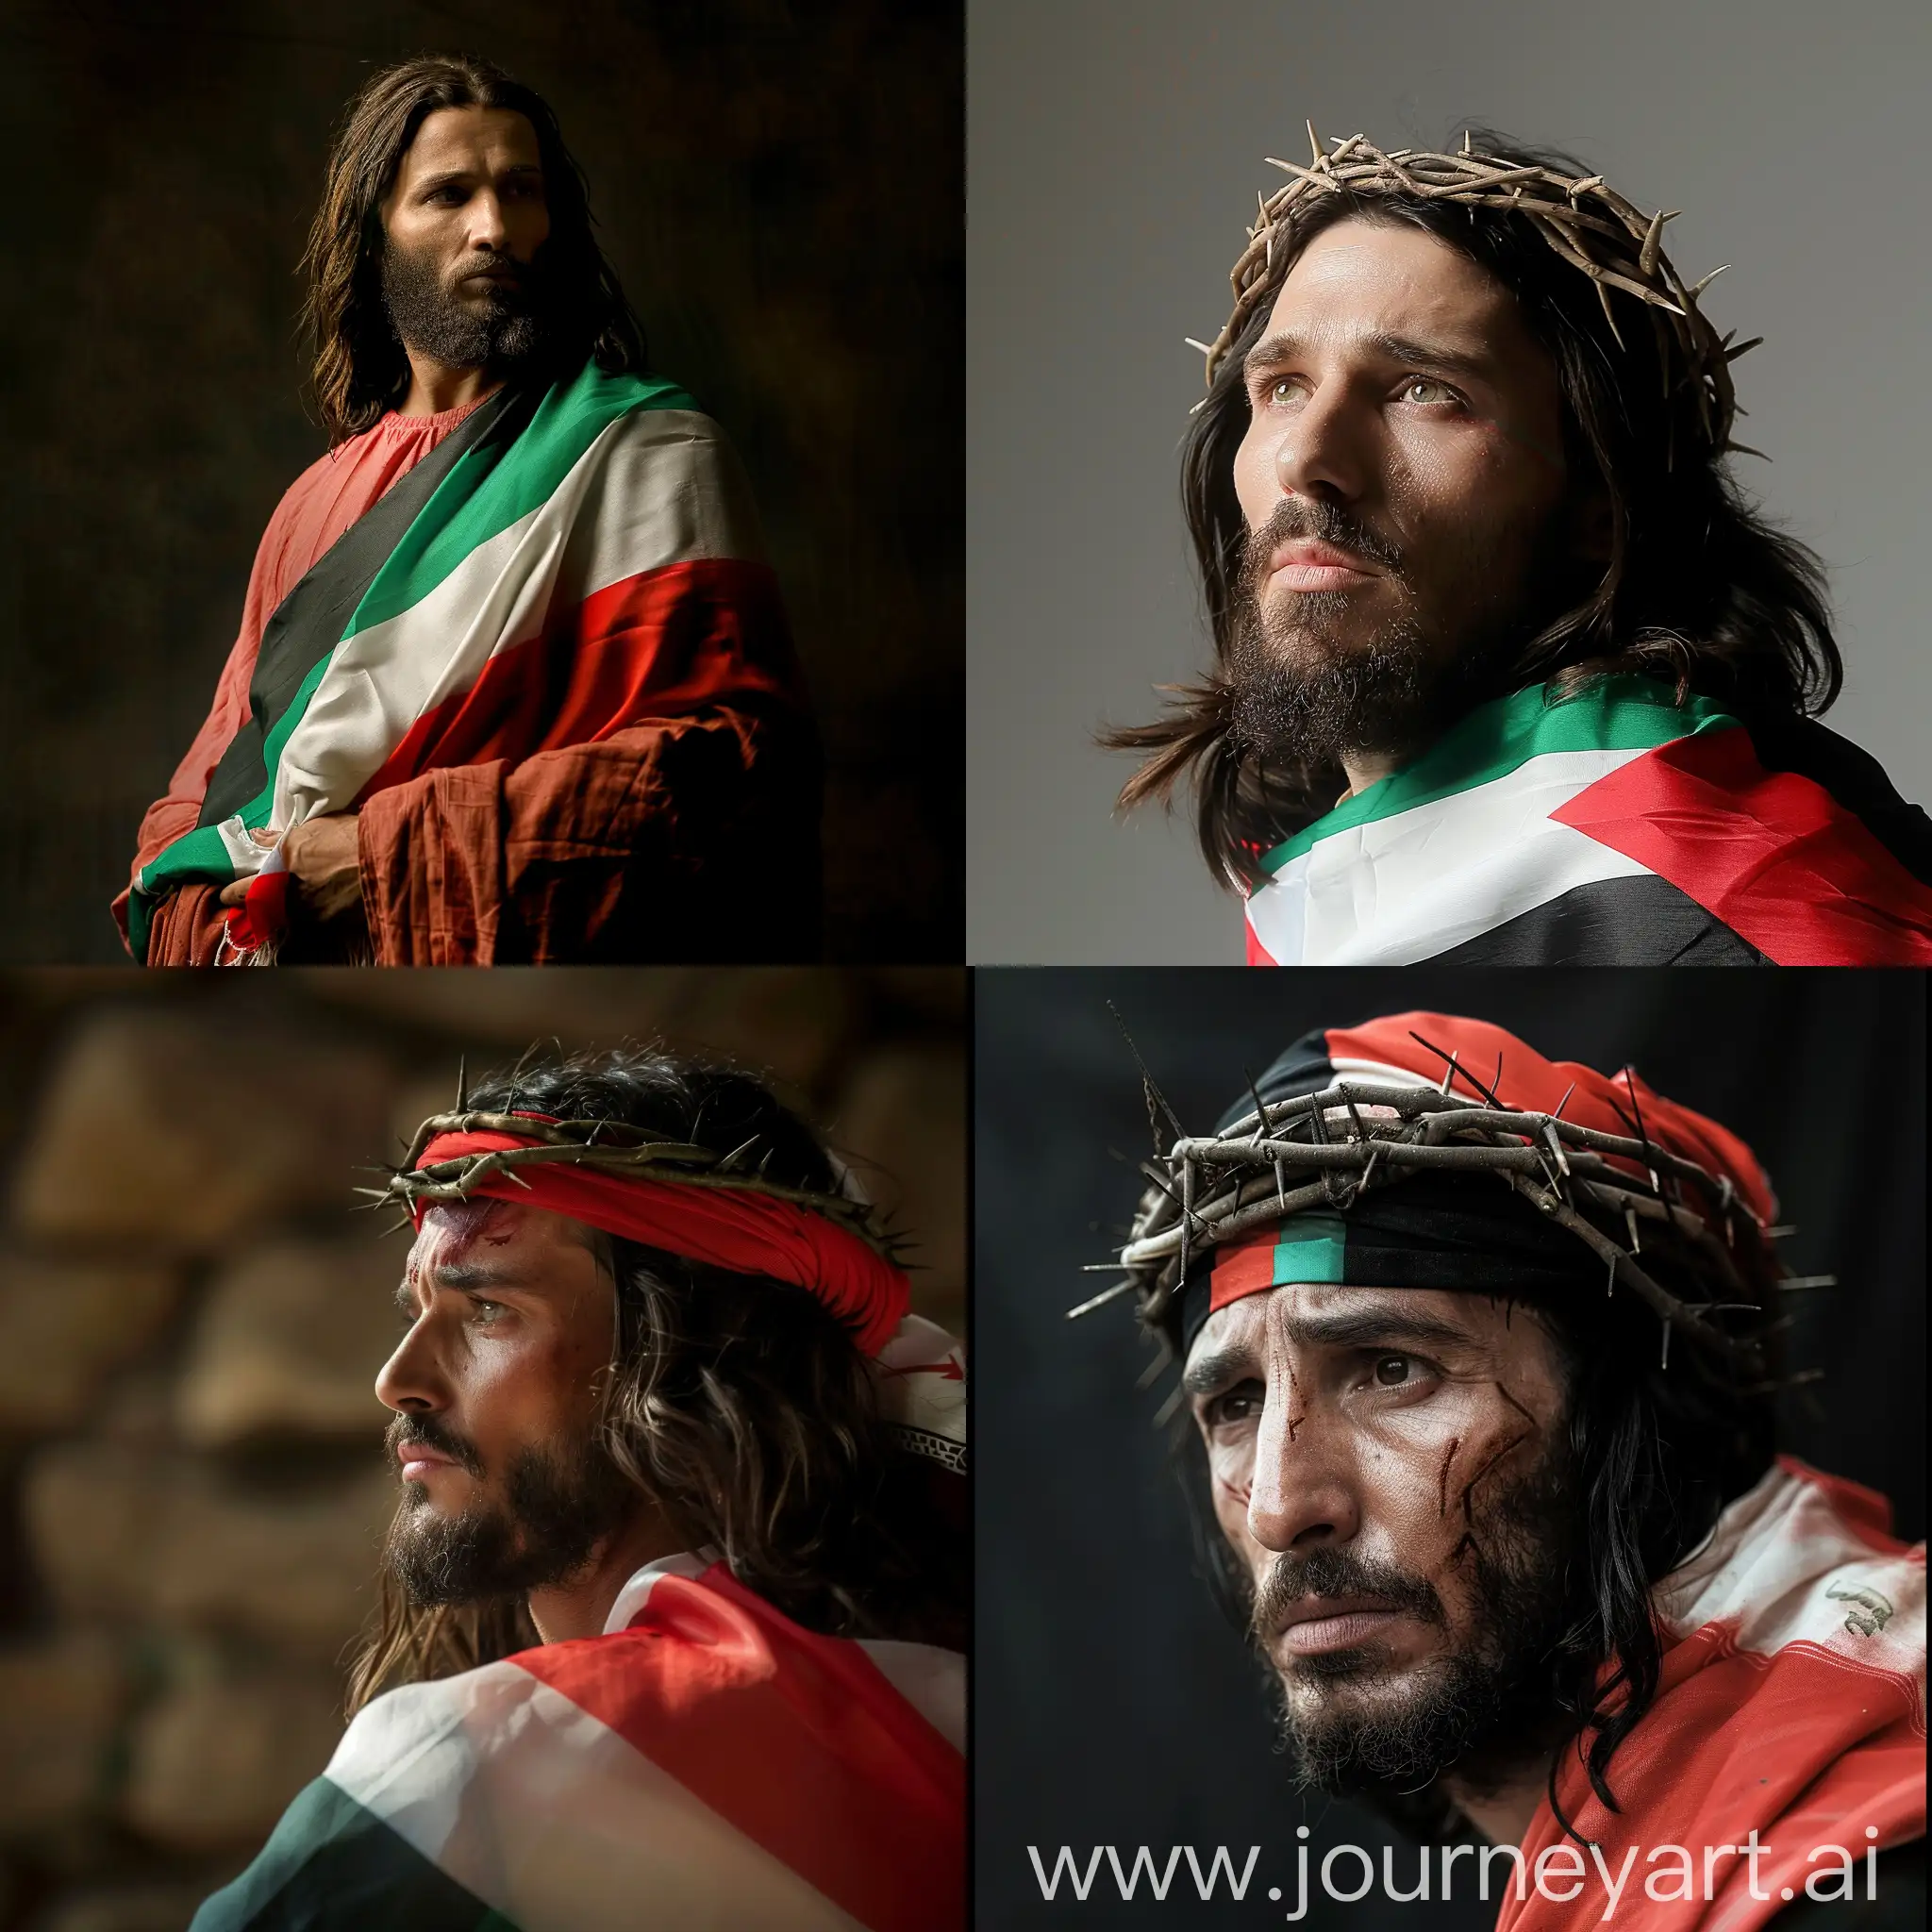 jesus christ wearing palestinian flag